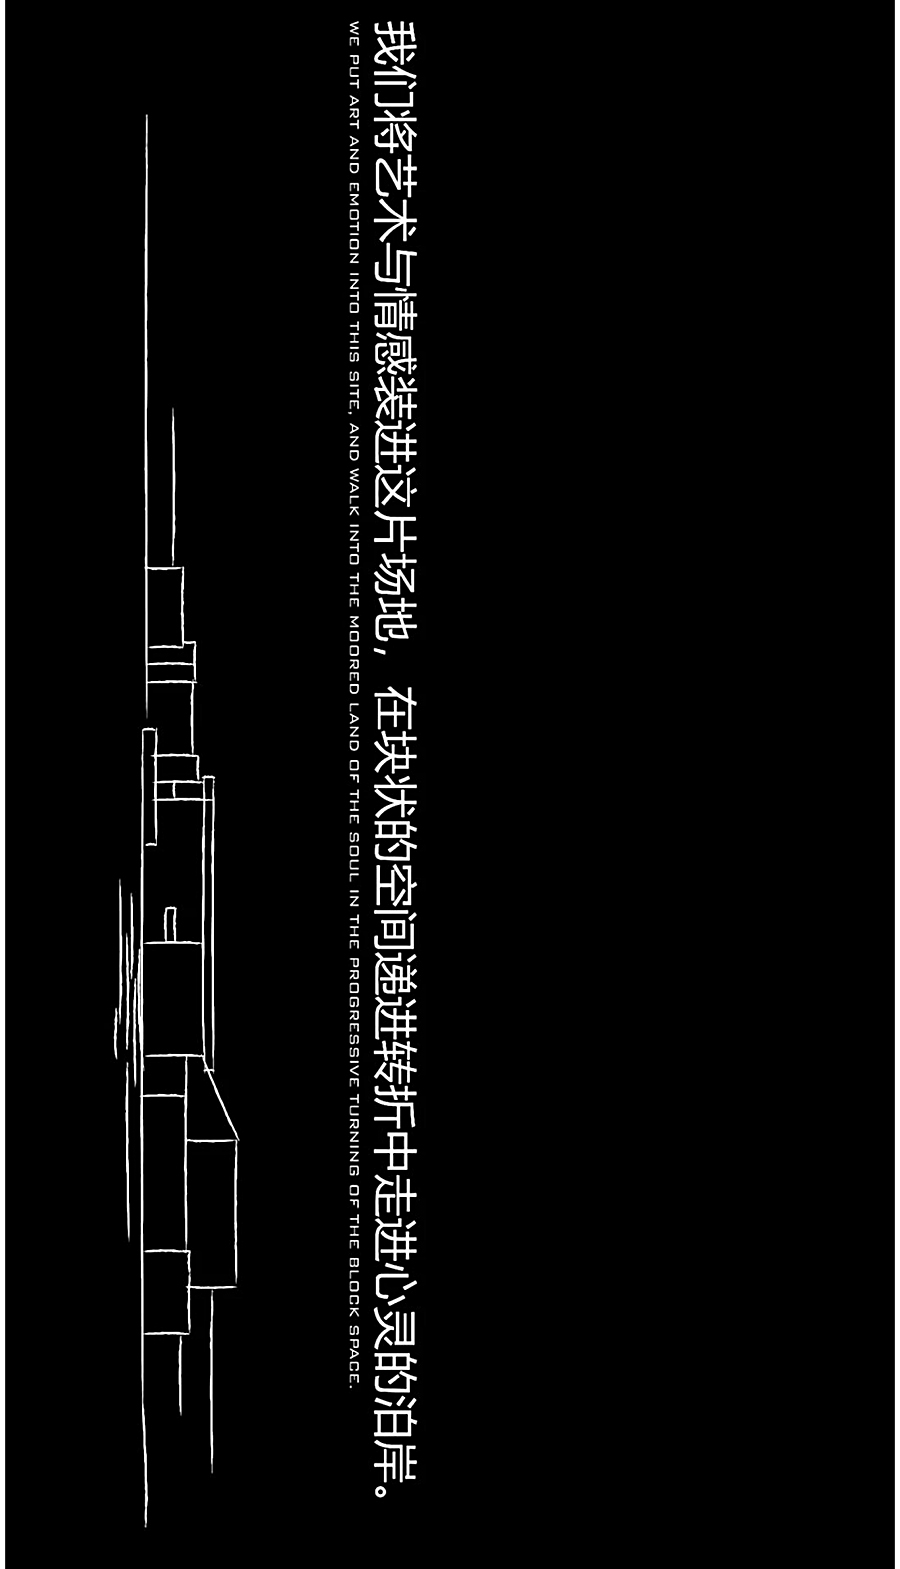 折叠空间中的情感释放-_-上海·招商虹桥公馆_0030_图层-31.jpg